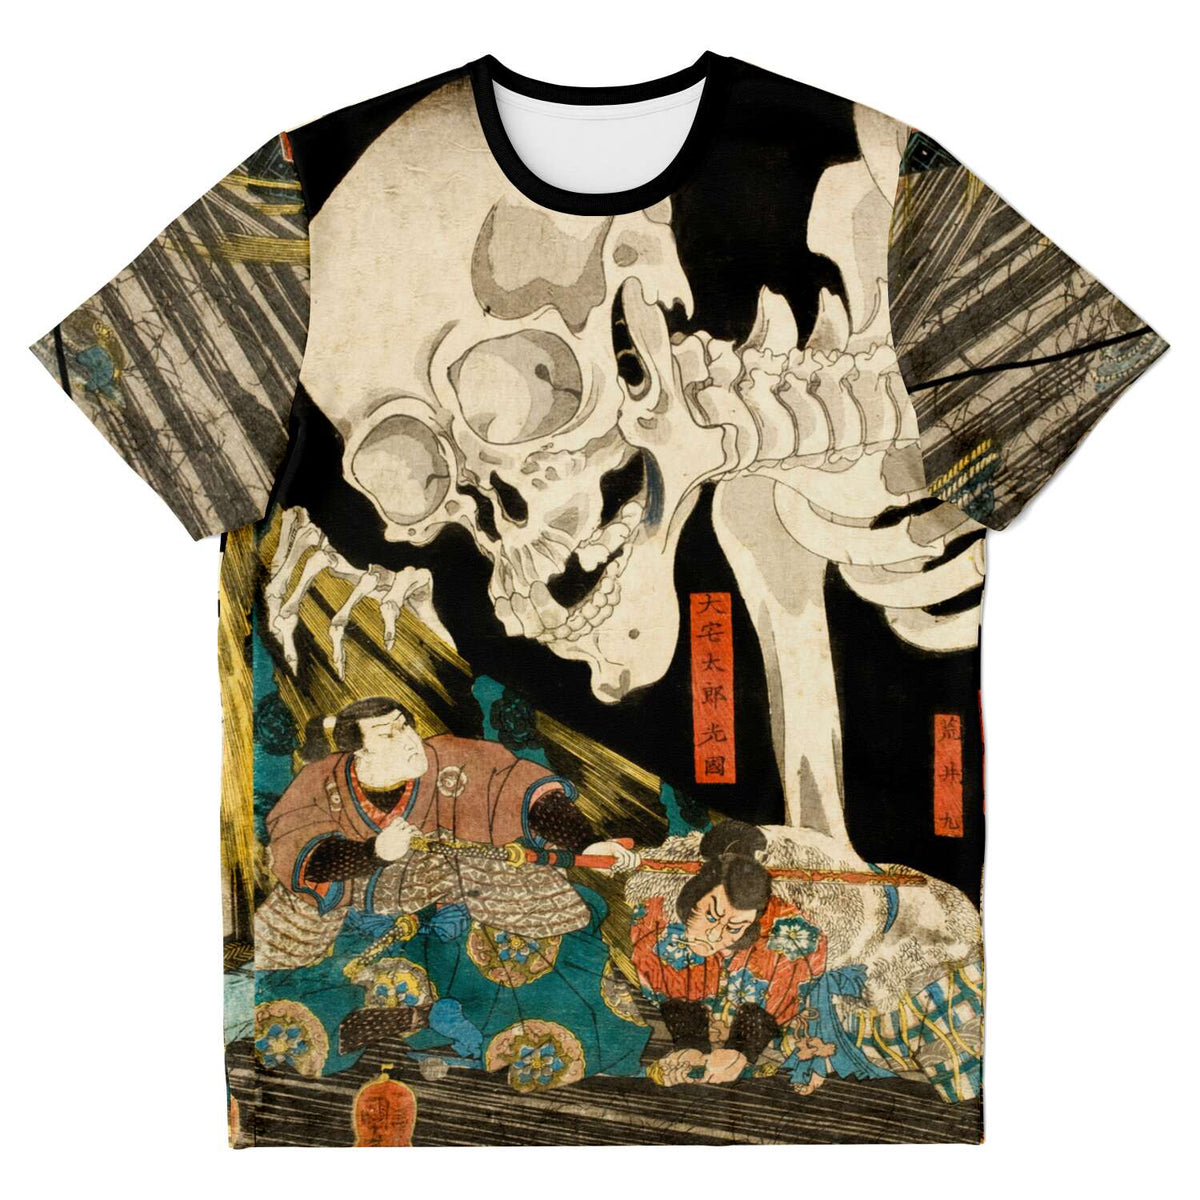 T-shirt XS Utagawa Kuniyoshi: Mitsukuni Defying the Skeleton Spectre Vintage Yokai Supernatural Japanese Mythology Boho Ukiyo-e Graphic T-Shirt